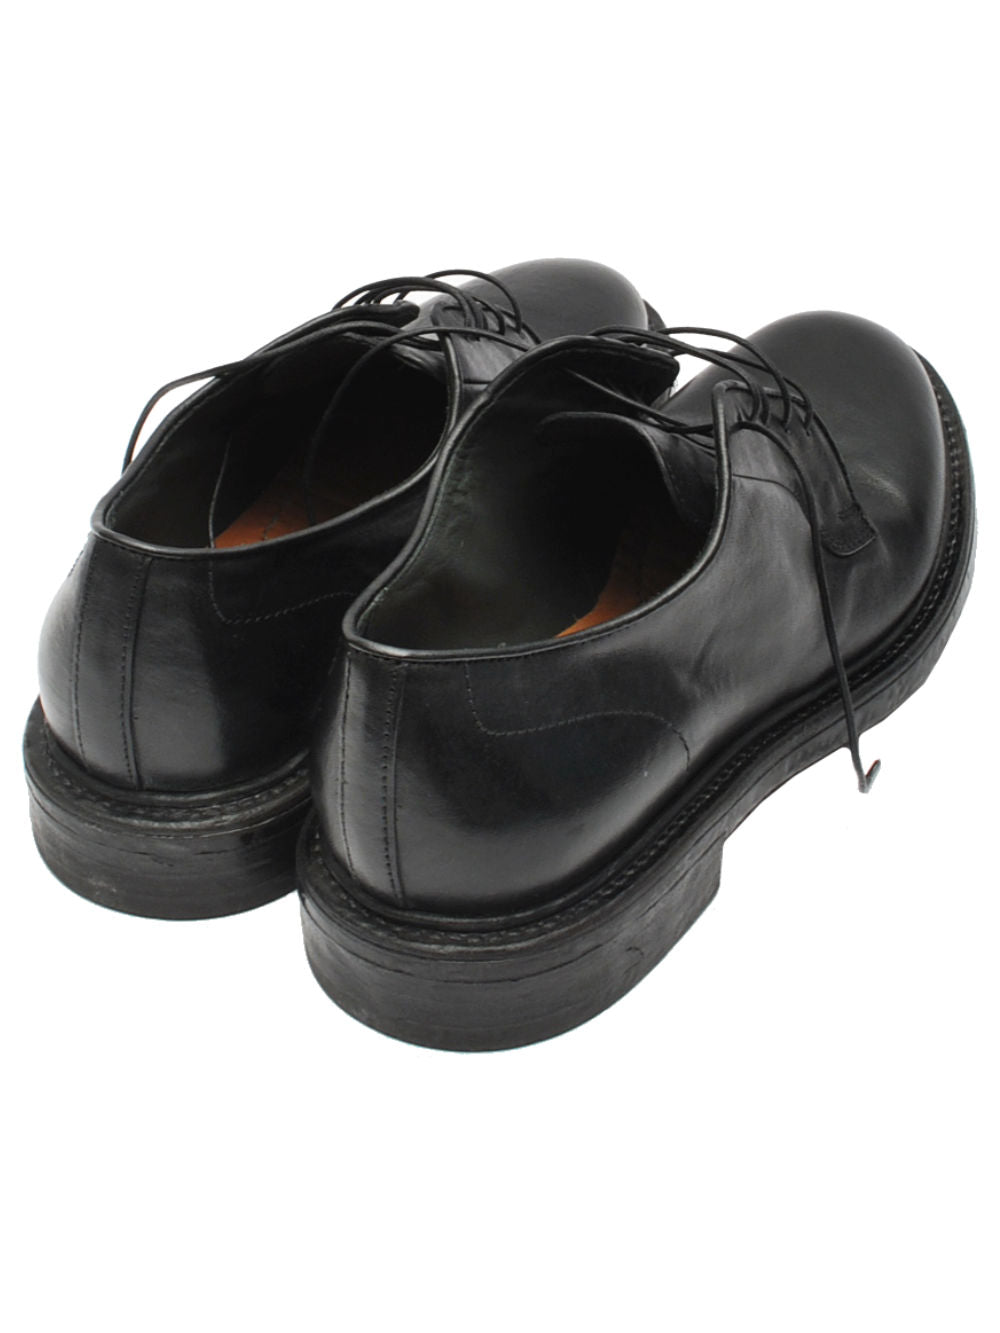 moma scarpa lacci nera 65303a